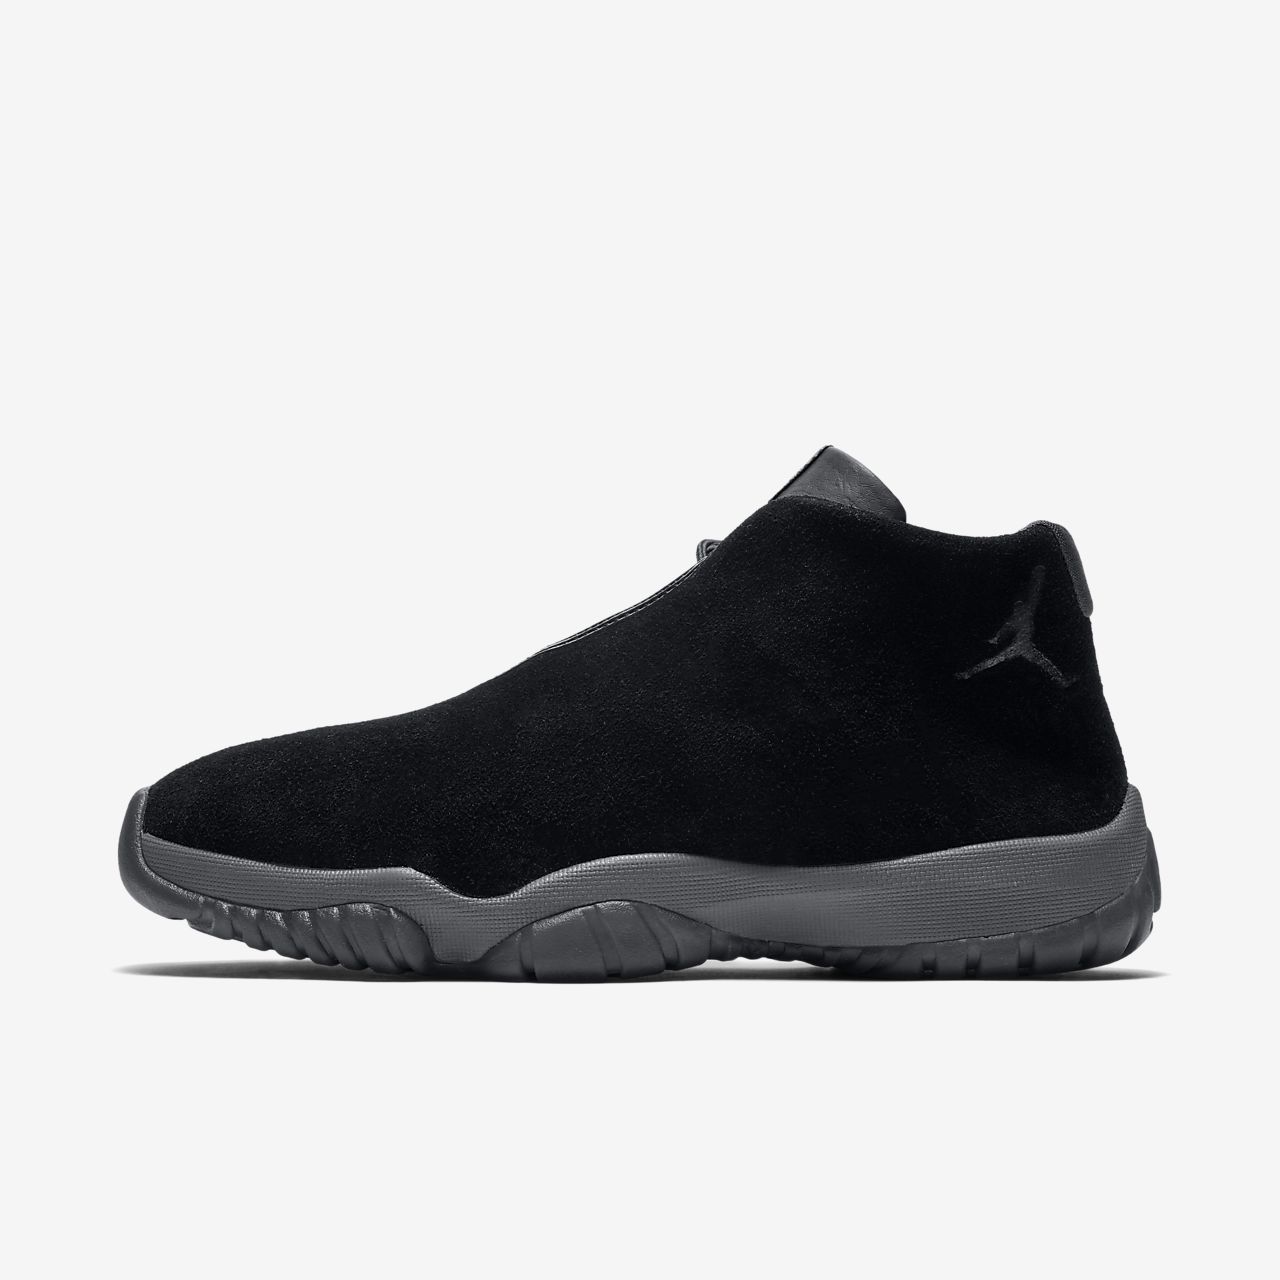 Air Jordan Future Men's Shoe